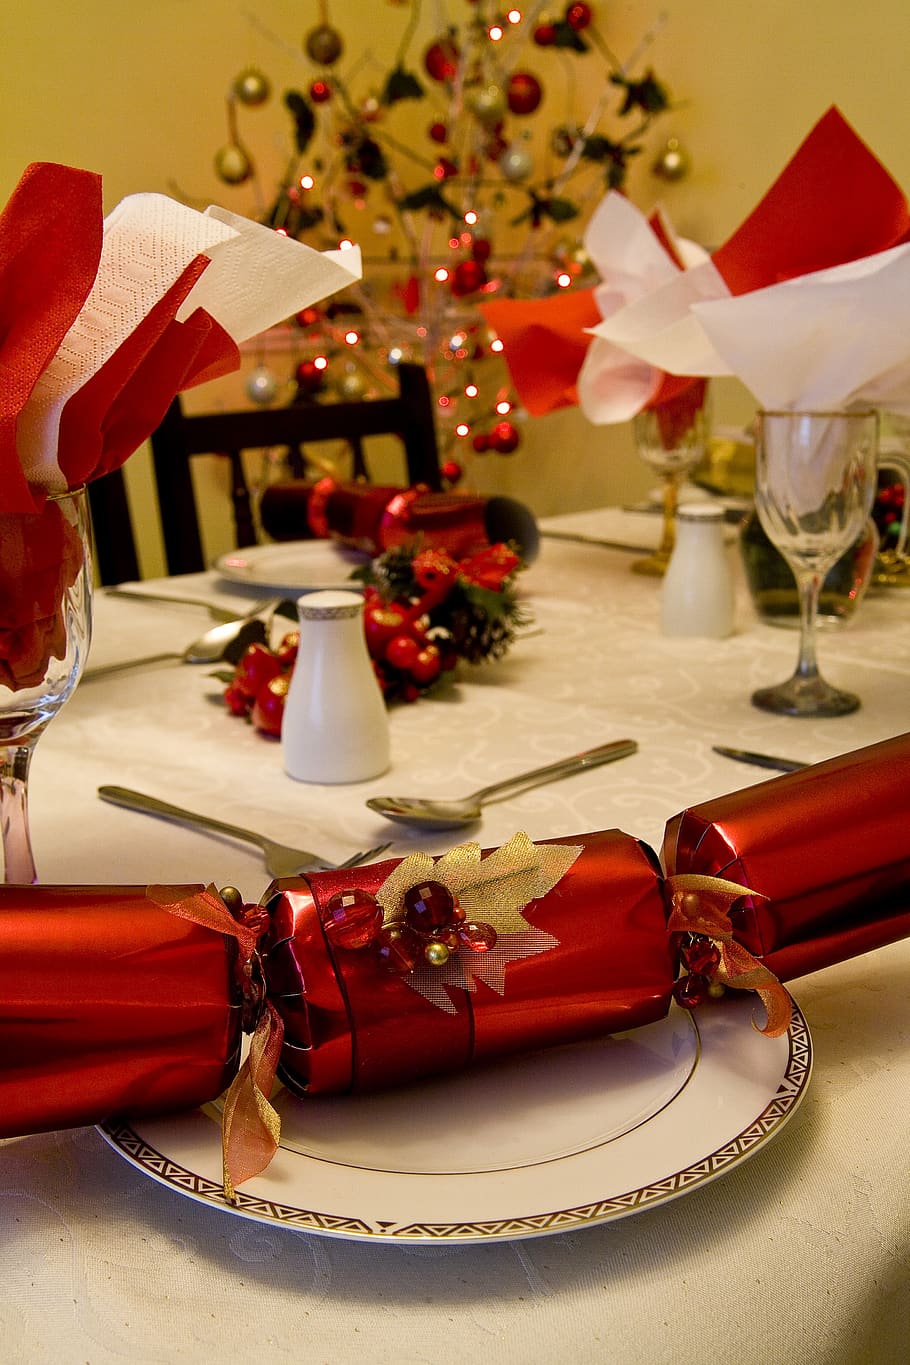 natal, cracker, meriah, perayaan, dekorasi, liburan, musiman, pesta, tradisional, musim